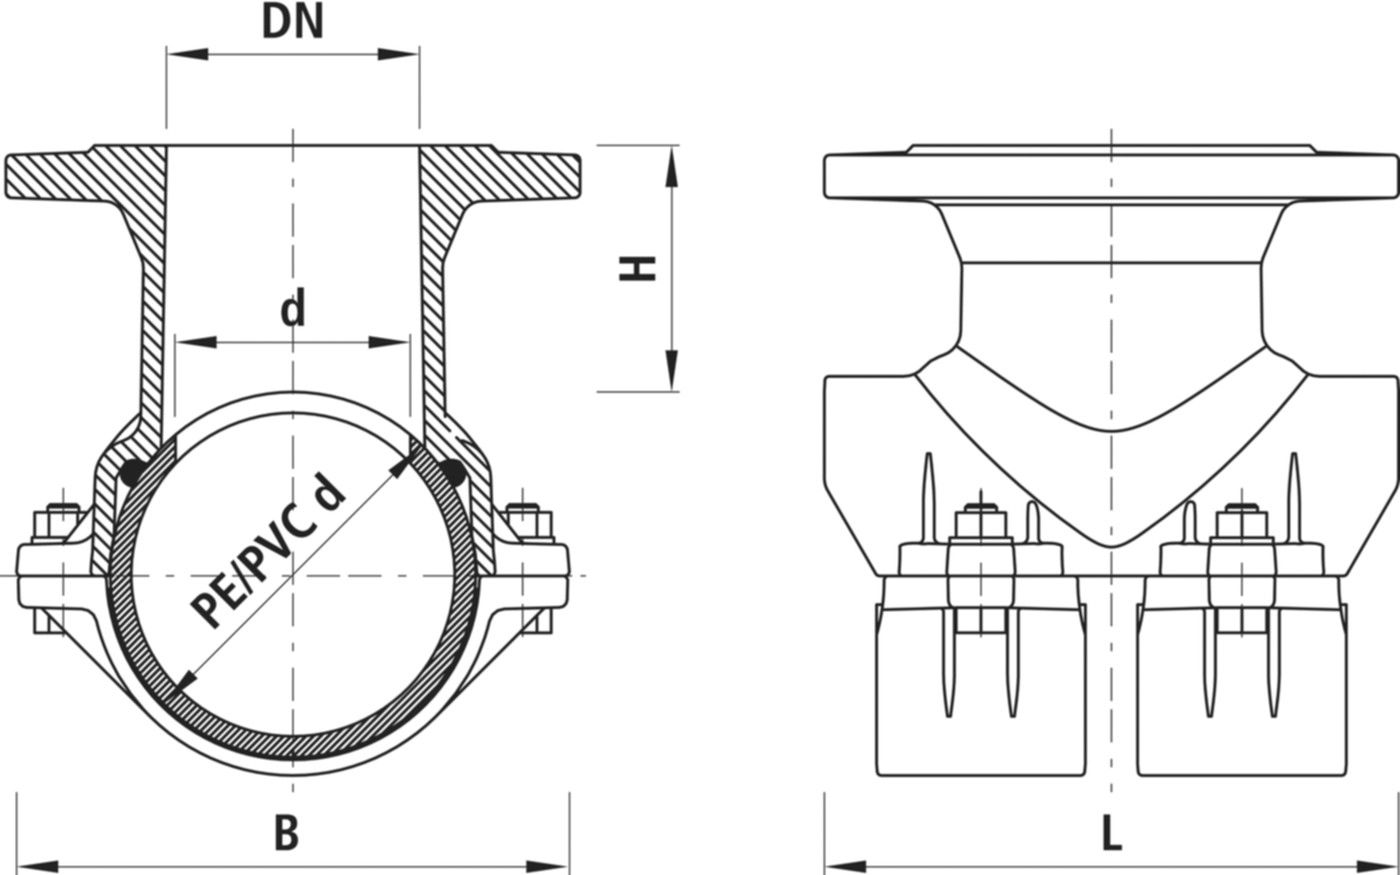 Haku-Anbohrschelle mit Flansch 5230 d 250mm / DN 80 - Hawle Hausanschluss- und Anbohrarmaturen